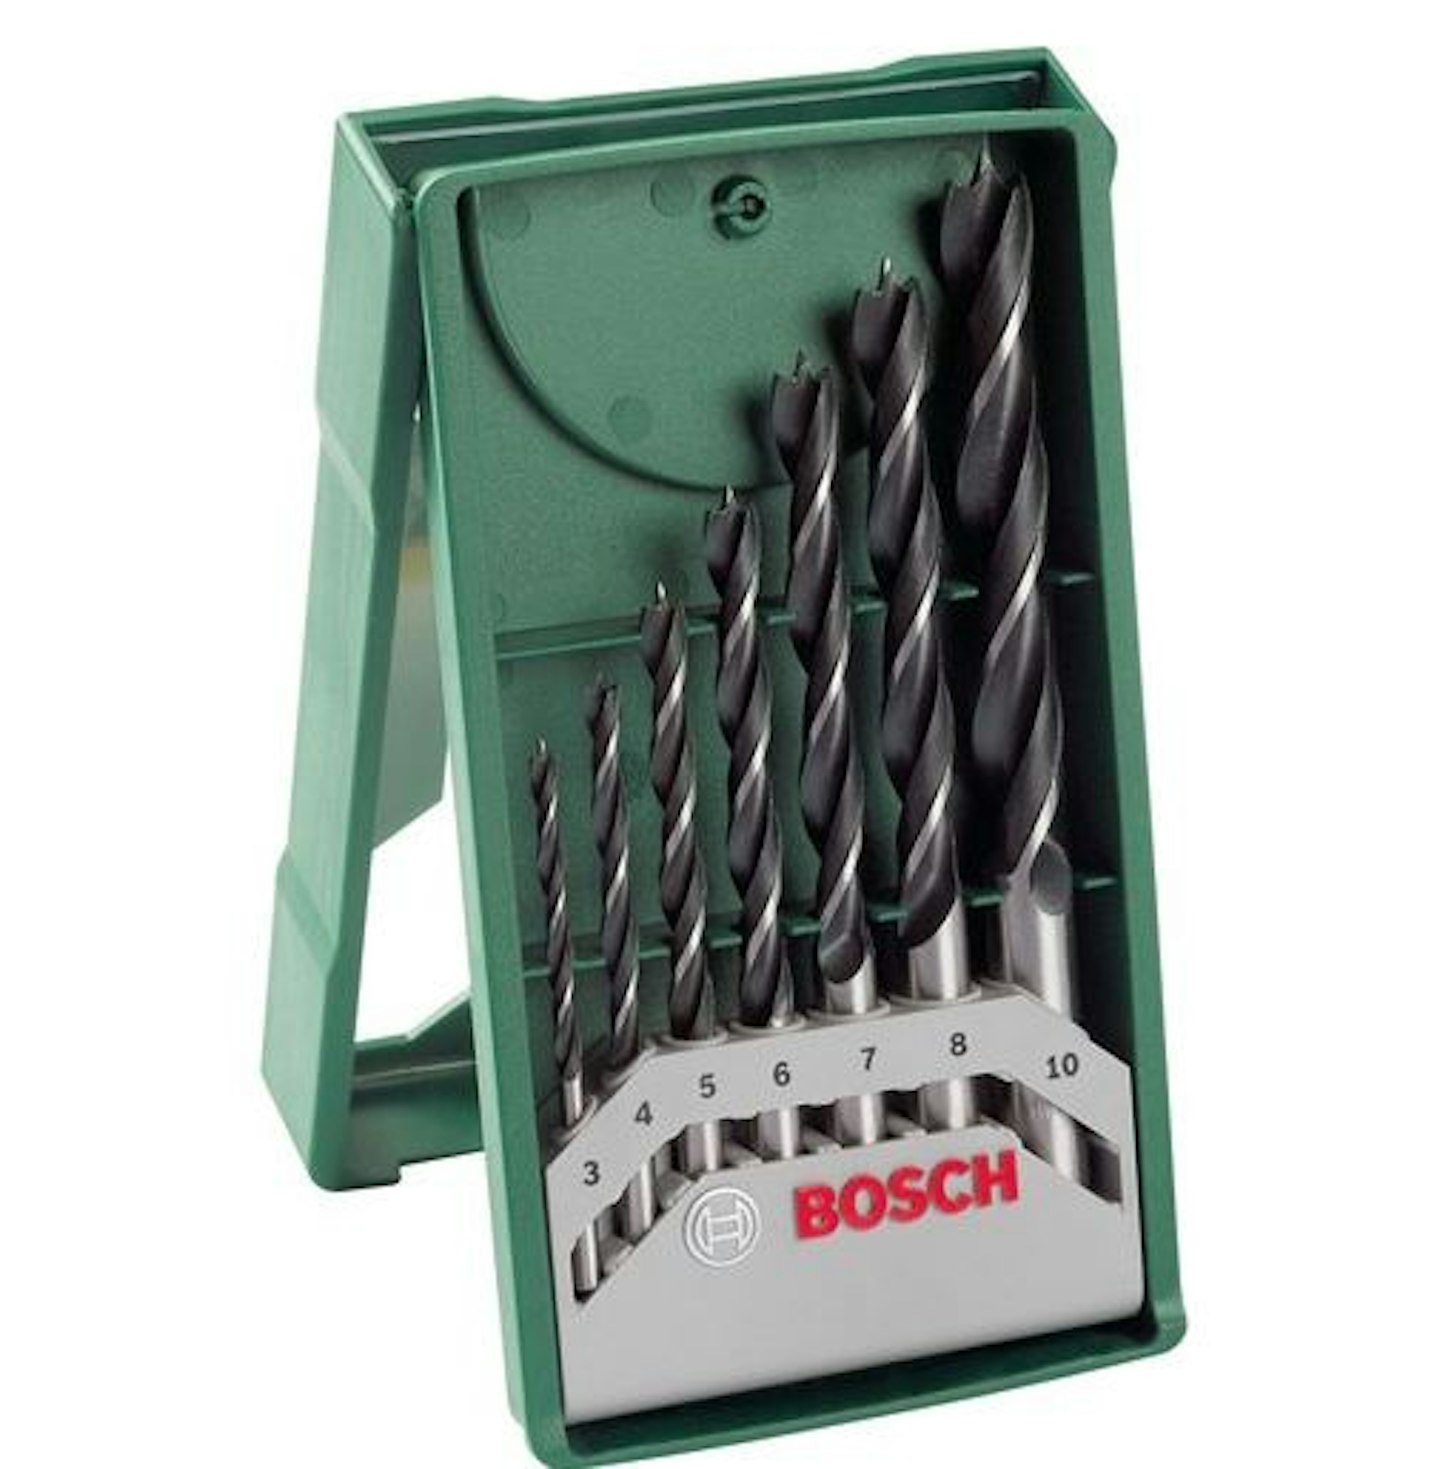 Bosch 7 Piece Mini X Line Brad Point Wood Drill Bit Set